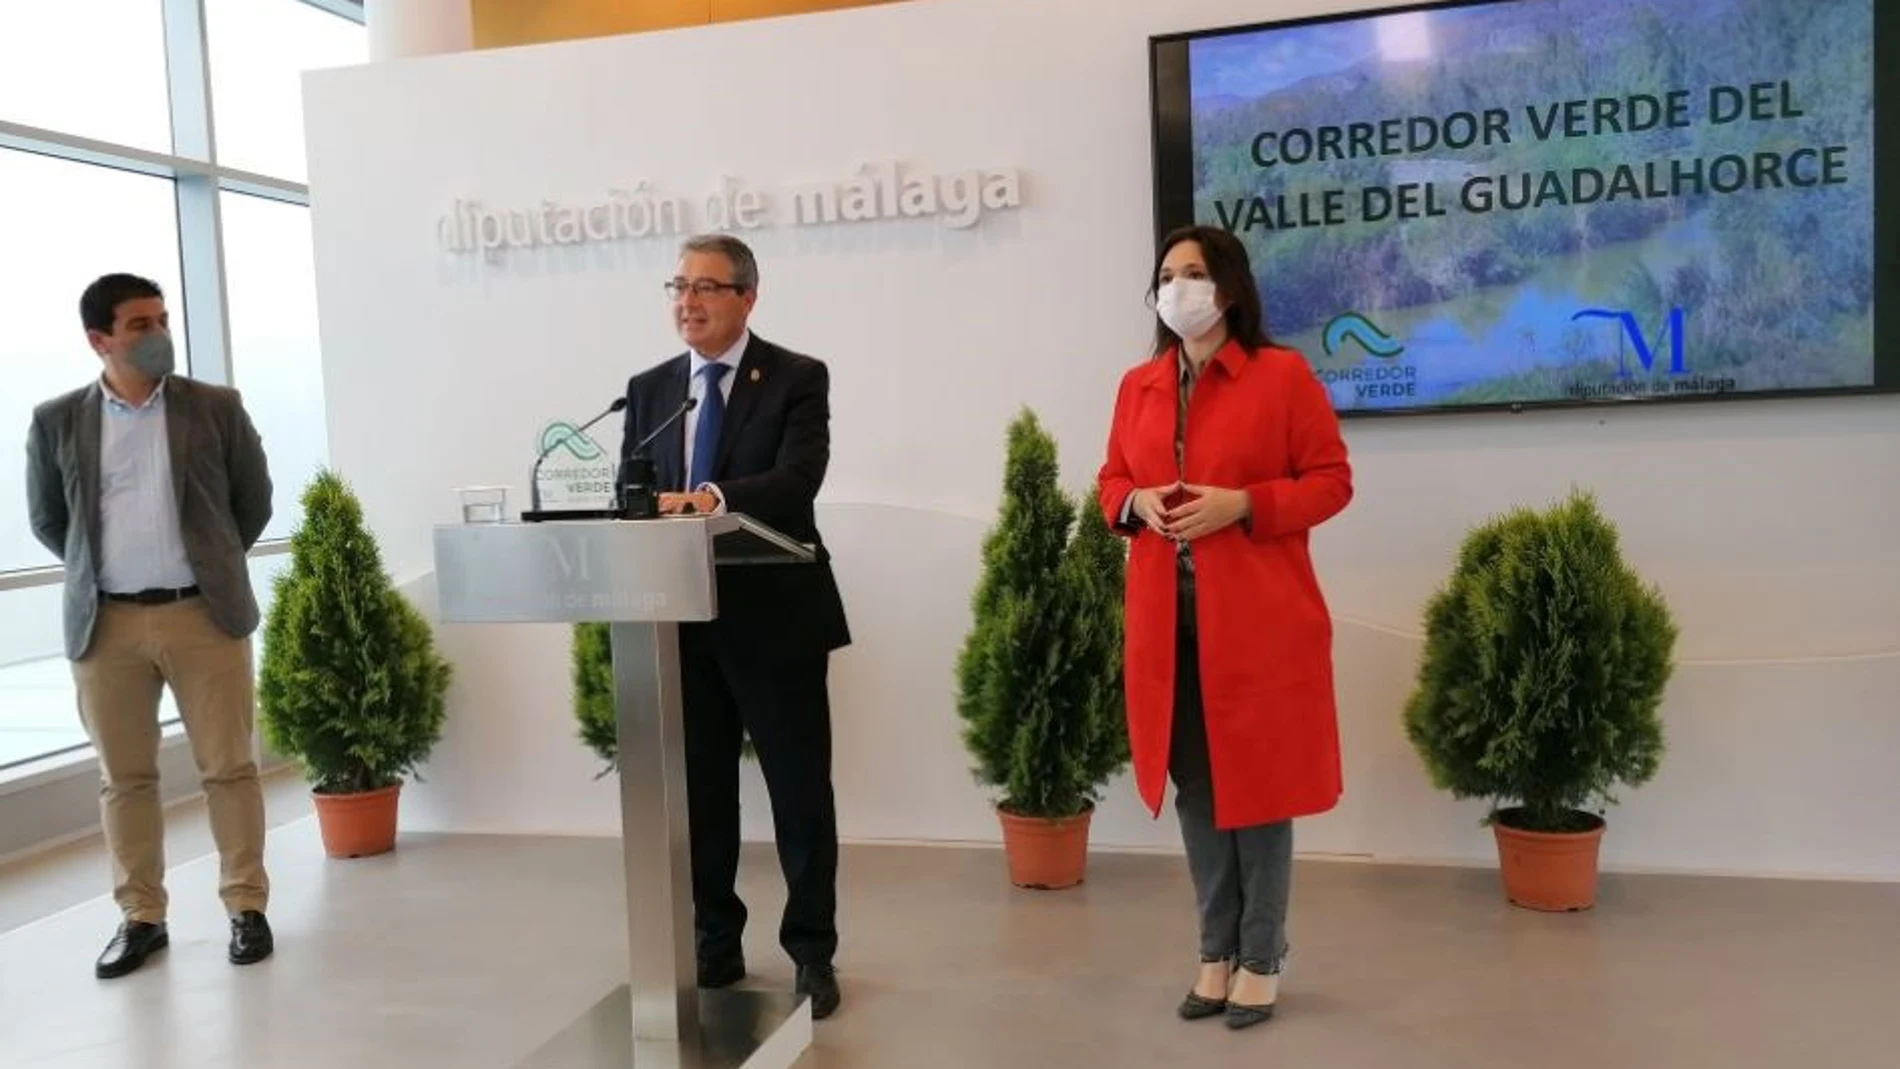 Francisco Salado, presidente de la Diputación, presenta el Corredor Verde del Guadalhorce, que se prevé el mayor parque fluvial en España